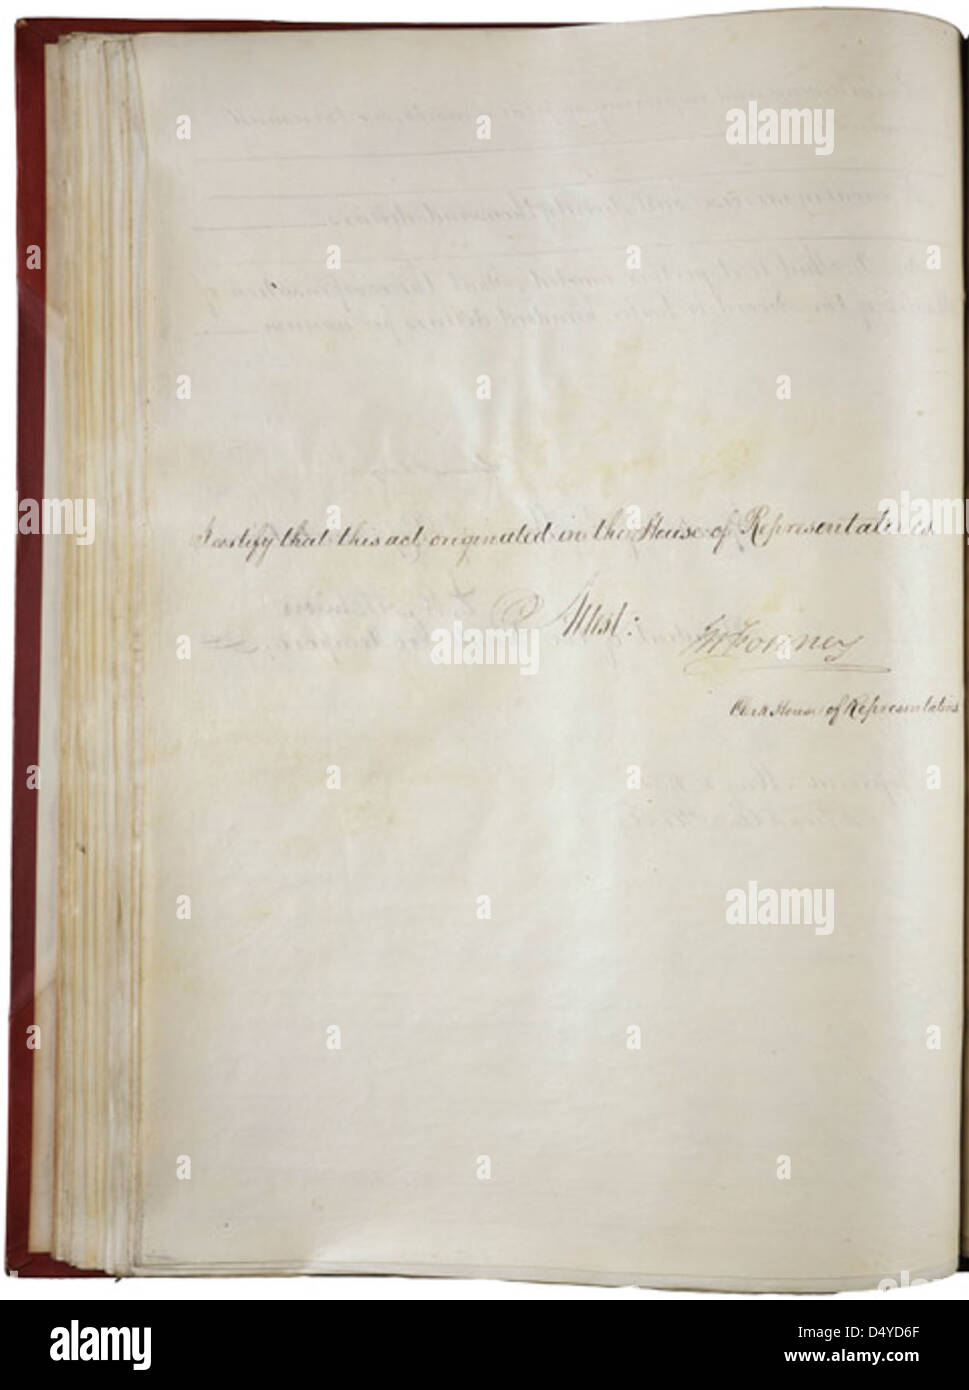 Kansas Nebraska Act de 1854, Page 1 de 3 Banque D'Images